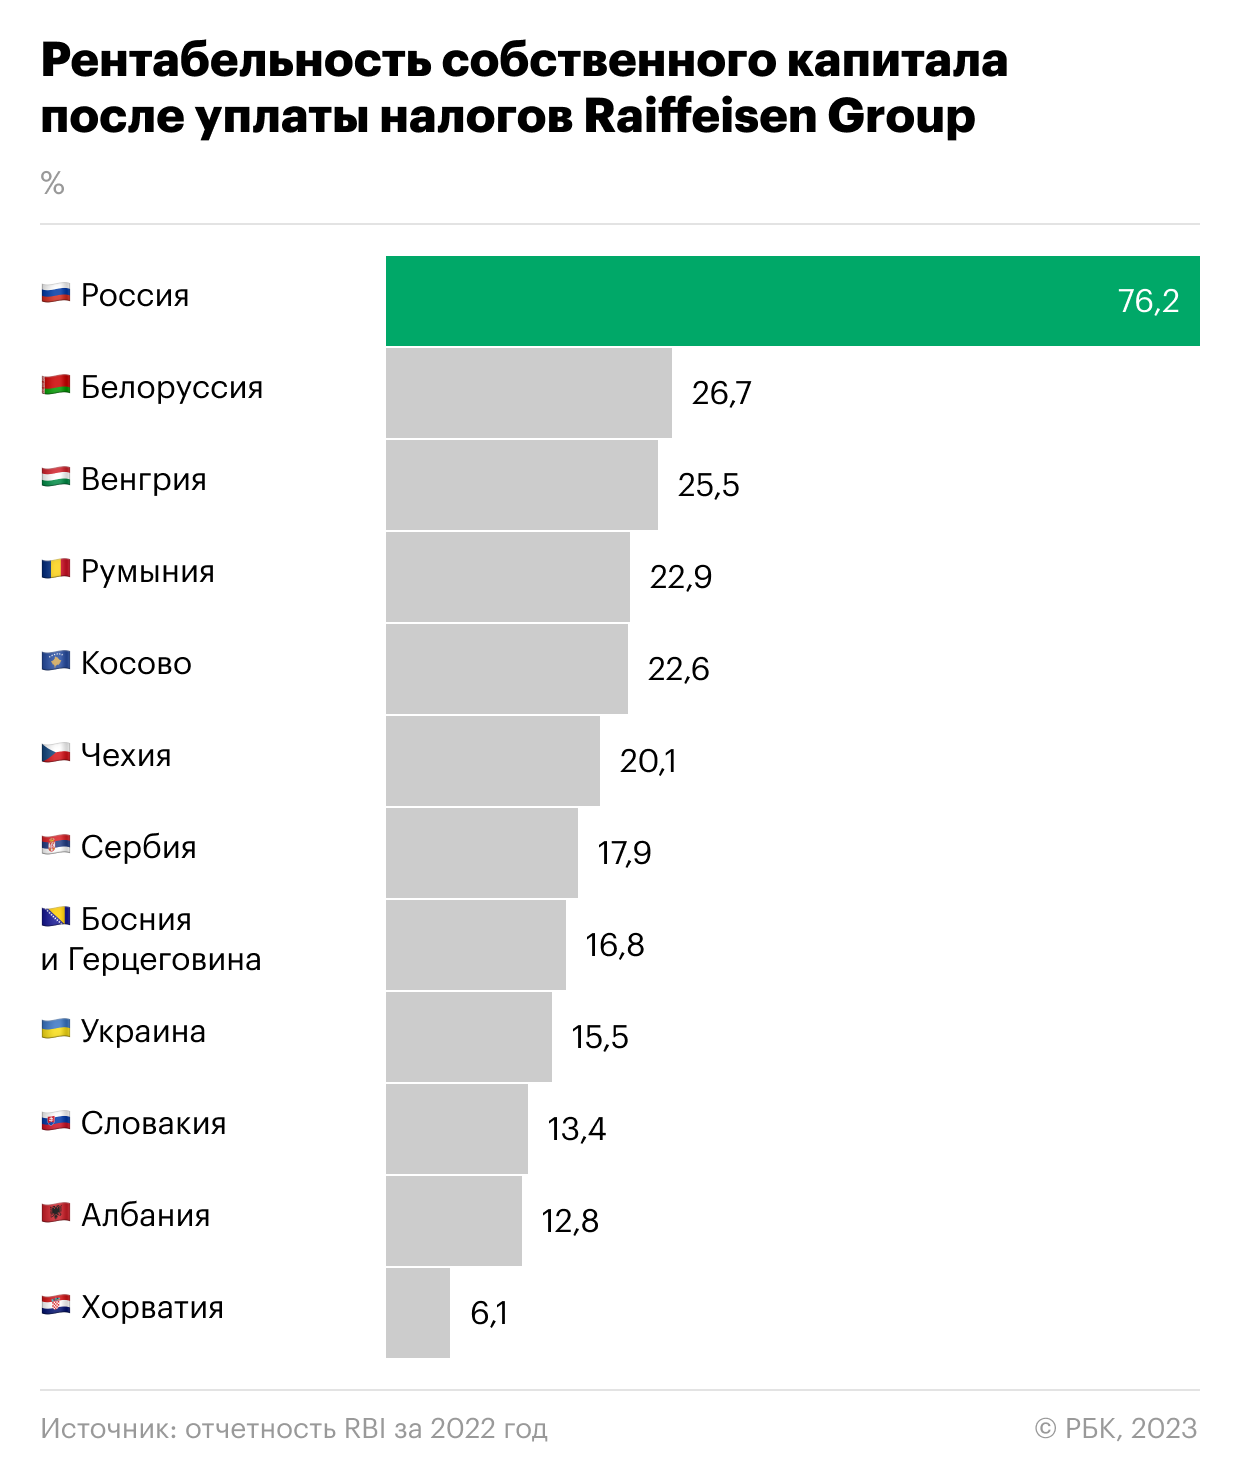 Российская «дочка» принесла Raiffeisenbank половину прибыли в 2022 году